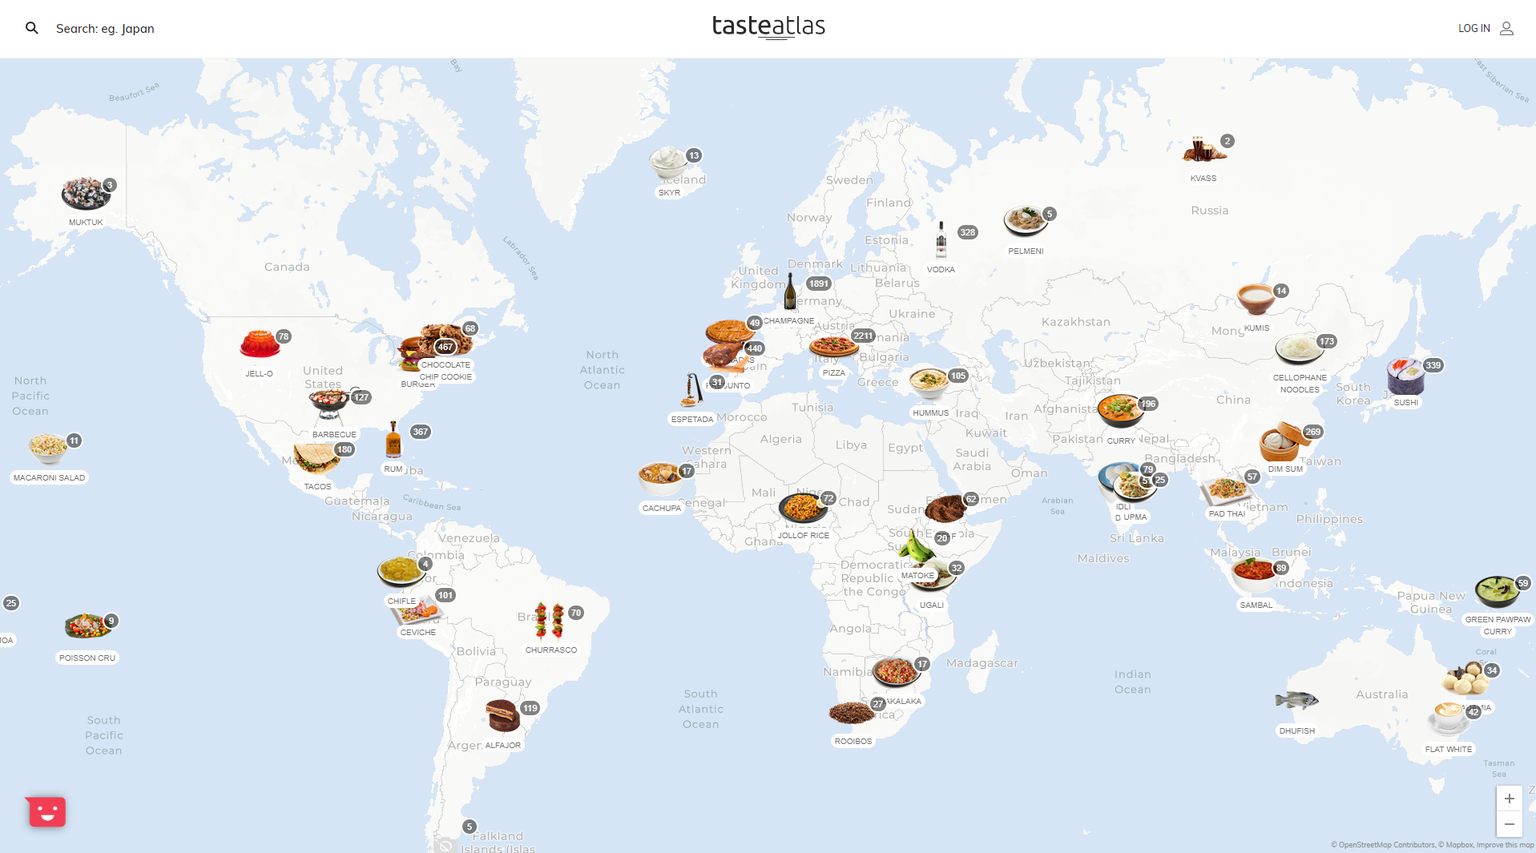 Die Webseite tasteatlas.com ist quasi das Google Maps für Freunde exotischer Gerichte und lokaler Spezialitäten.